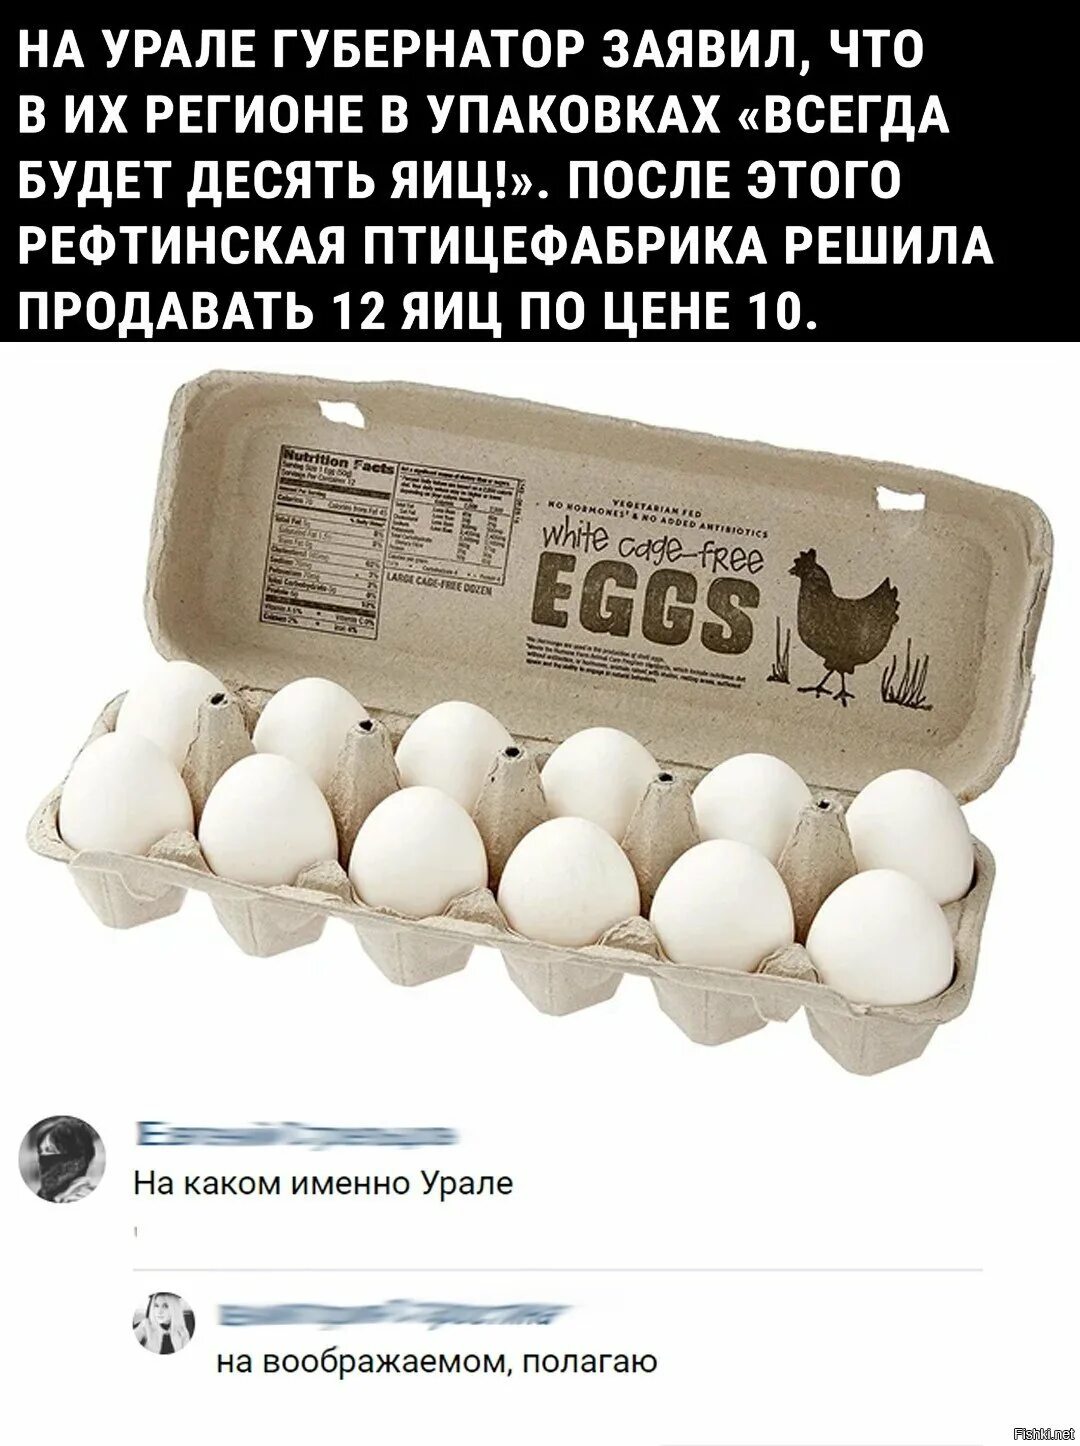 Десять яиц в день. Объявление о продаже яиц. Образец объявления о продаже яиц. Реклама продажи яиц. Интересное объявление о продаже яиц.